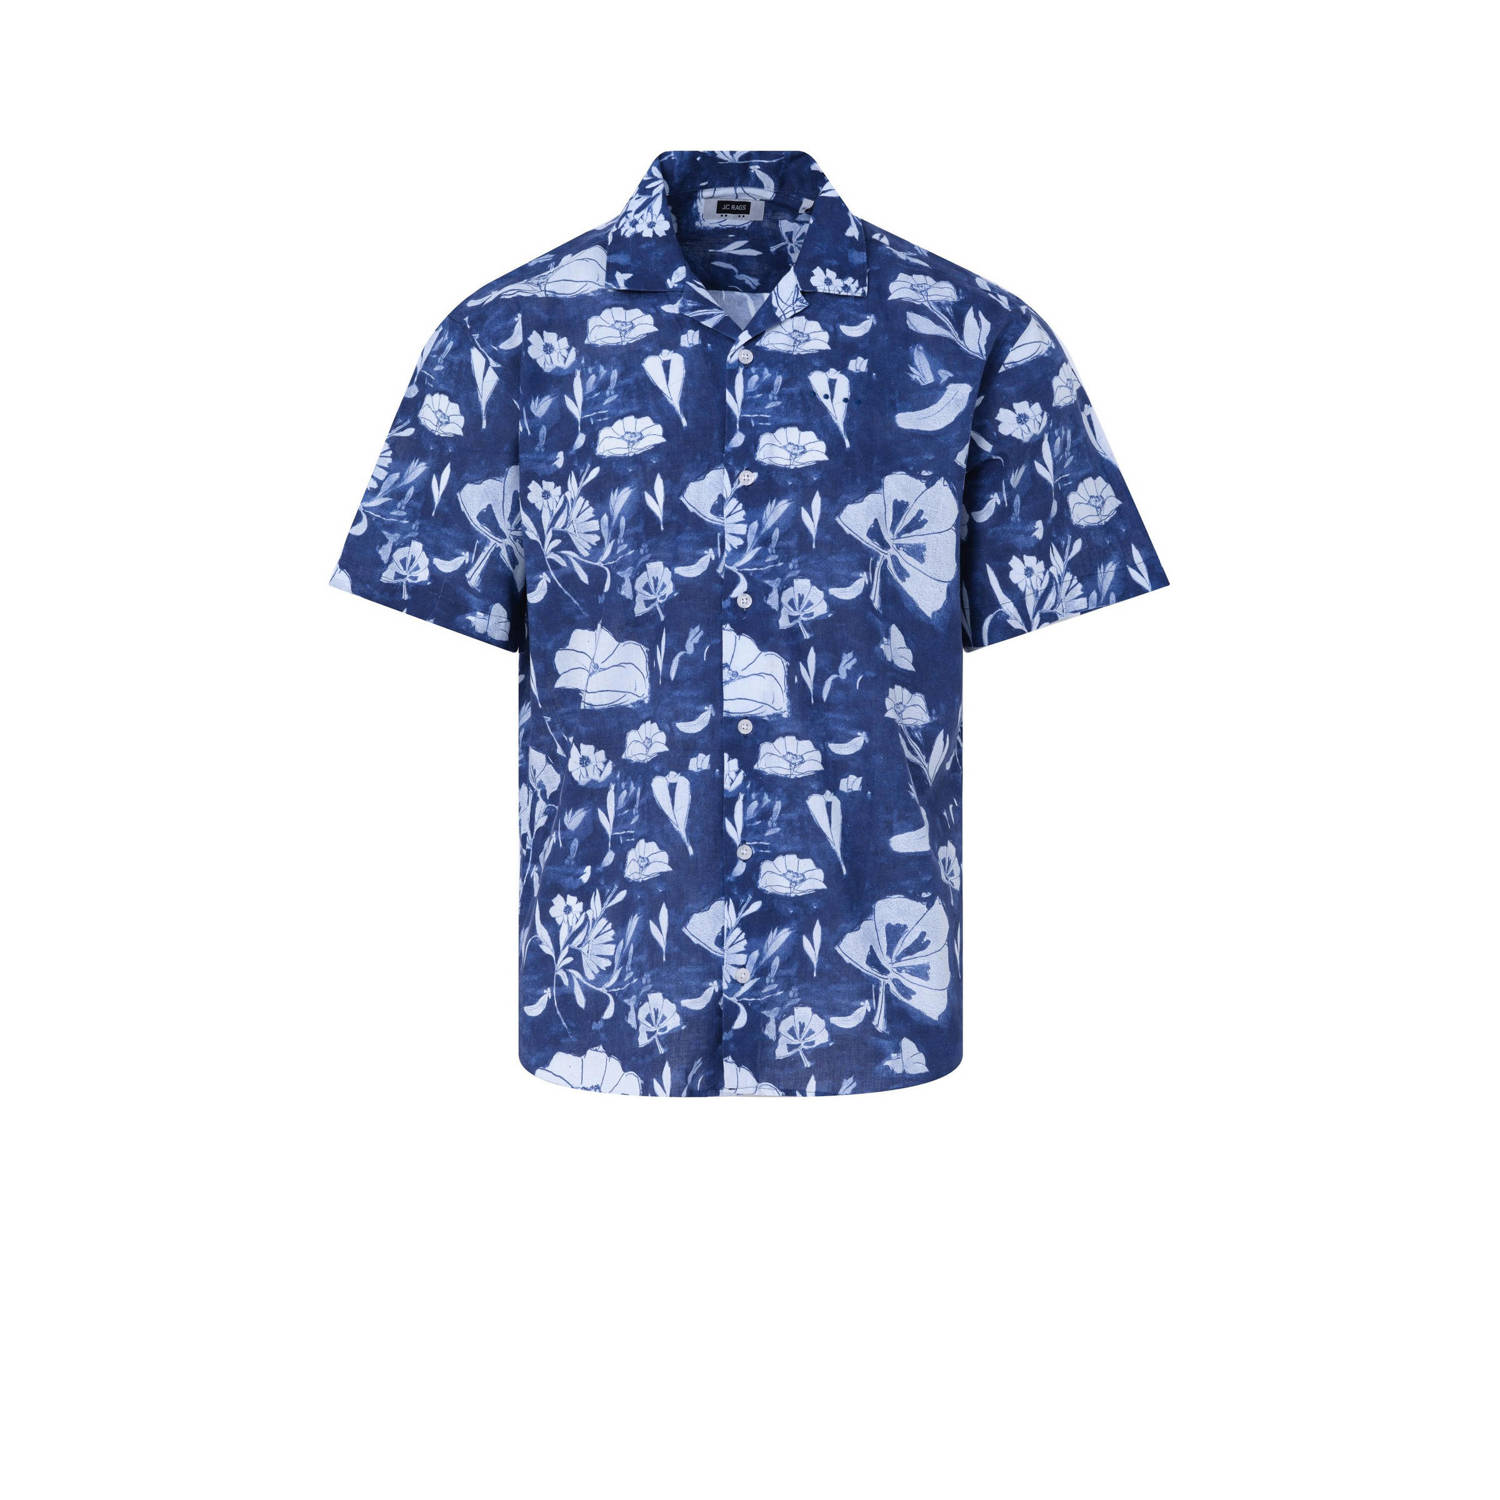 J.C. Rags regular fit overhemd met all over print blue depths dessin